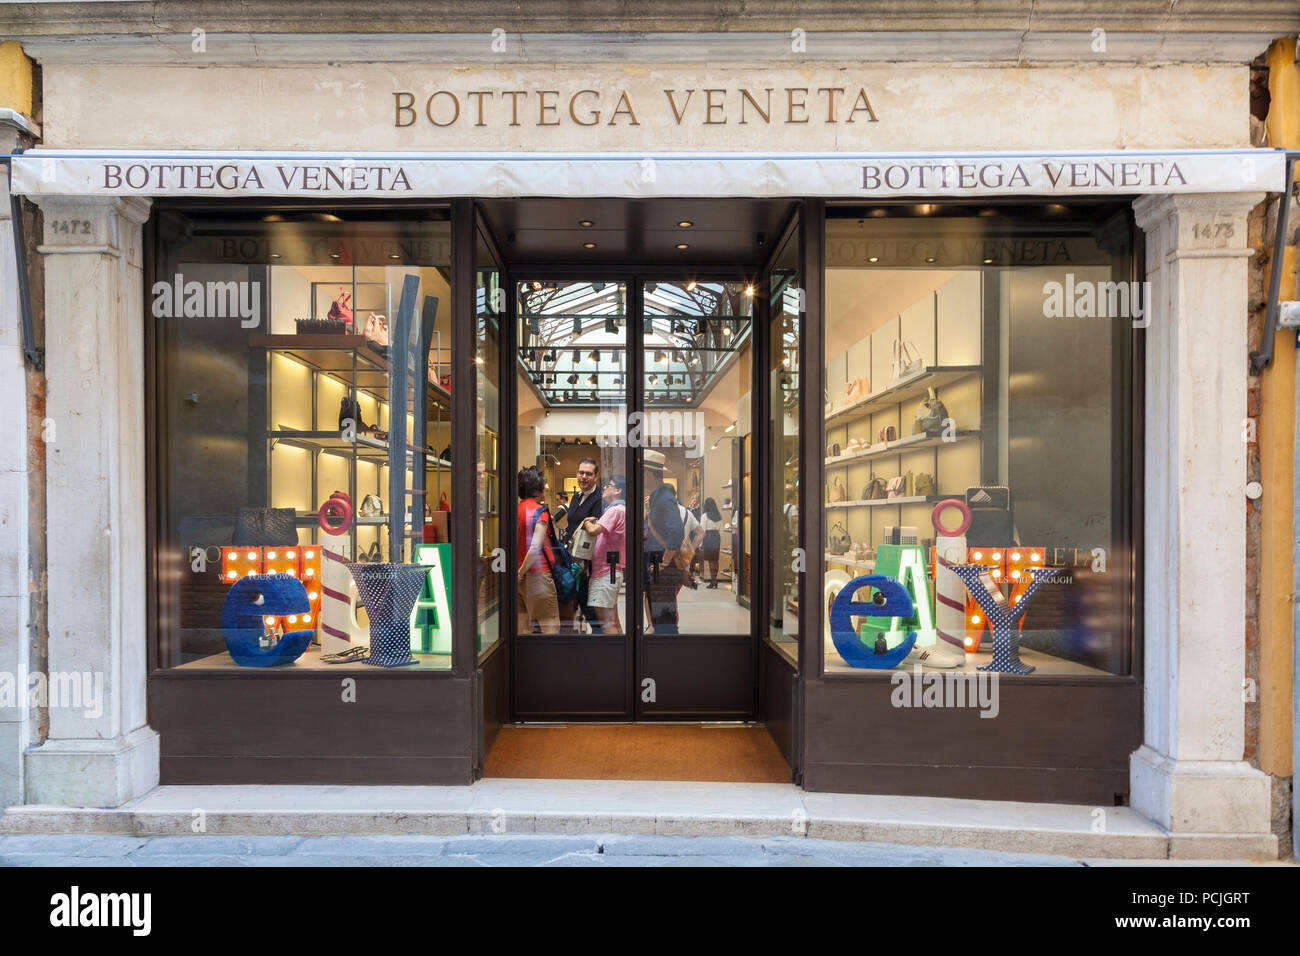 Bottega Veneta channels Veneto design sensibilities at Sloane Street store